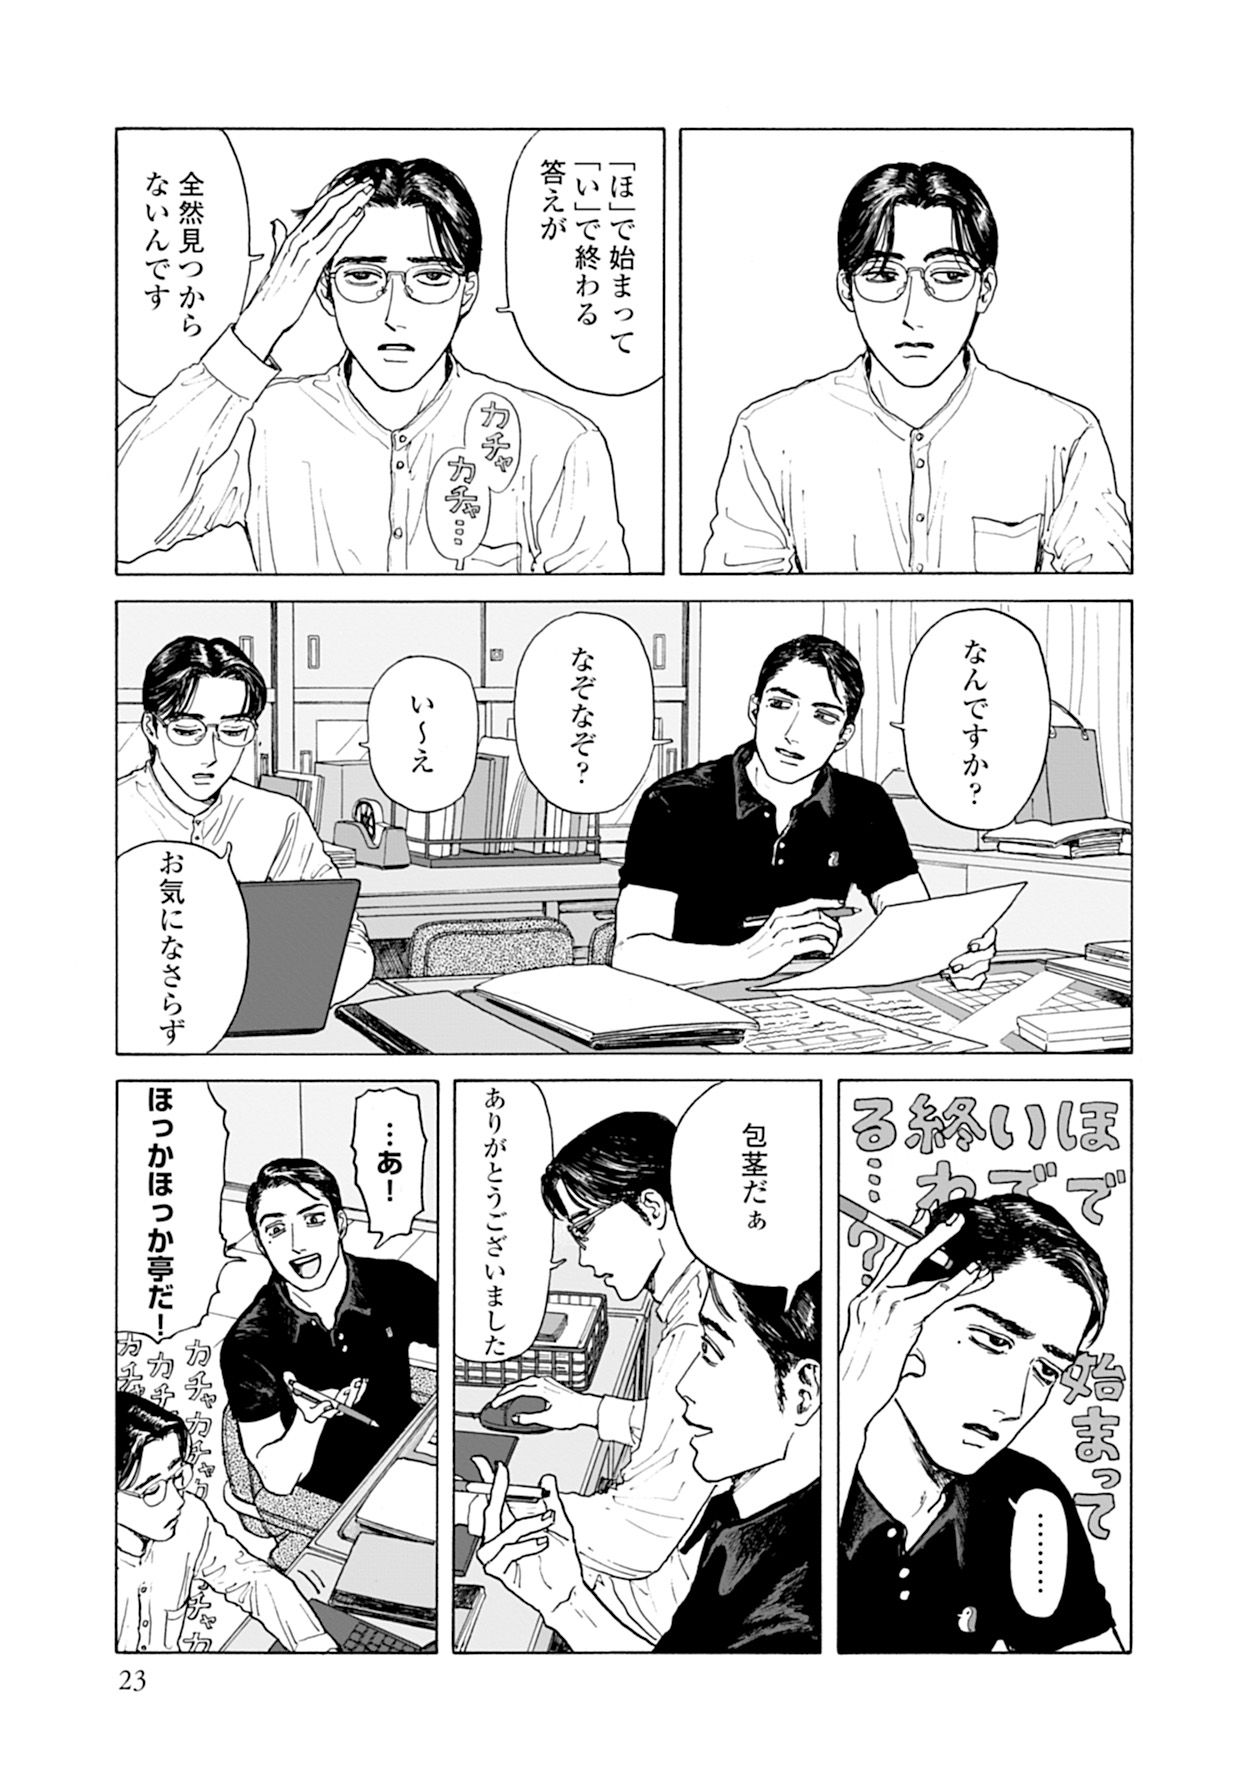 大人気ギャグ漫画『女の園の星』 作者・和山やまが明かす制作秘話